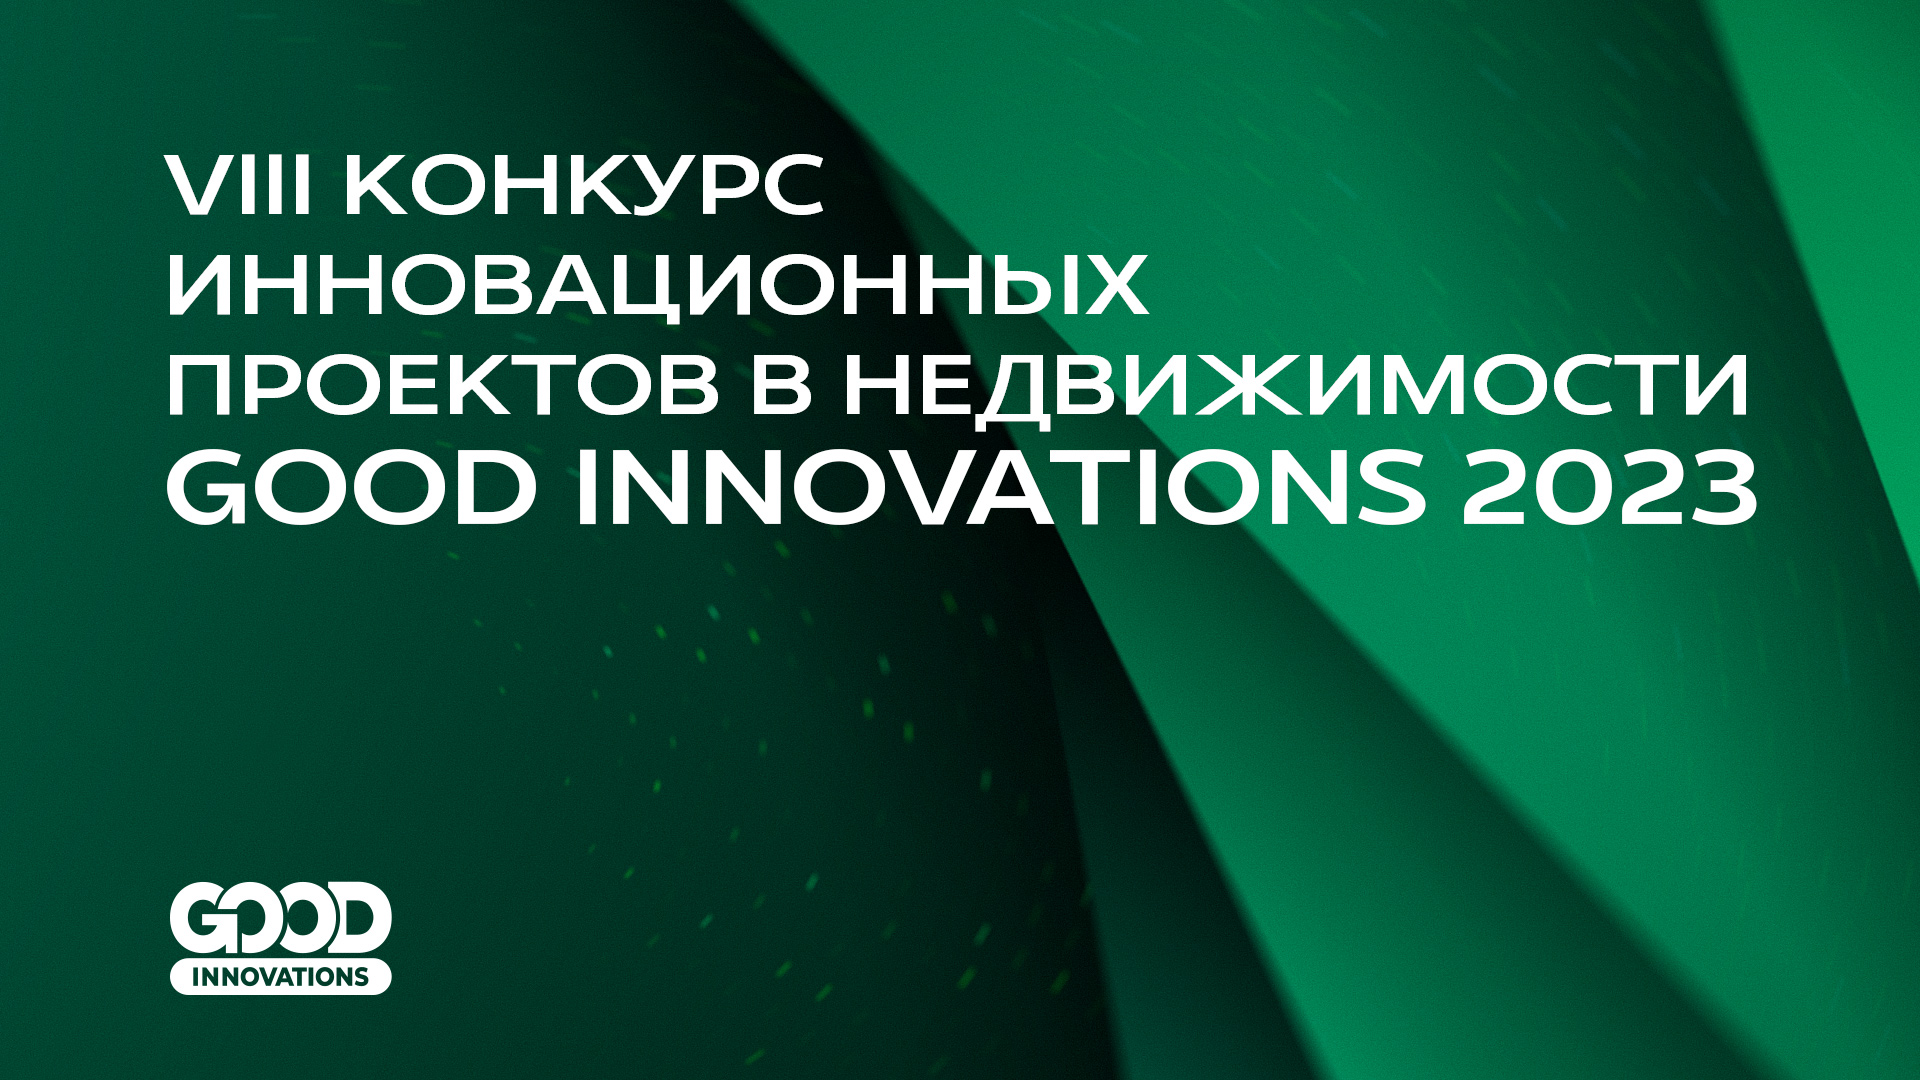 Для VIII Конкурса инновационных проектов GOOD INNOVATIONS 2023 утверждены критерии оценки